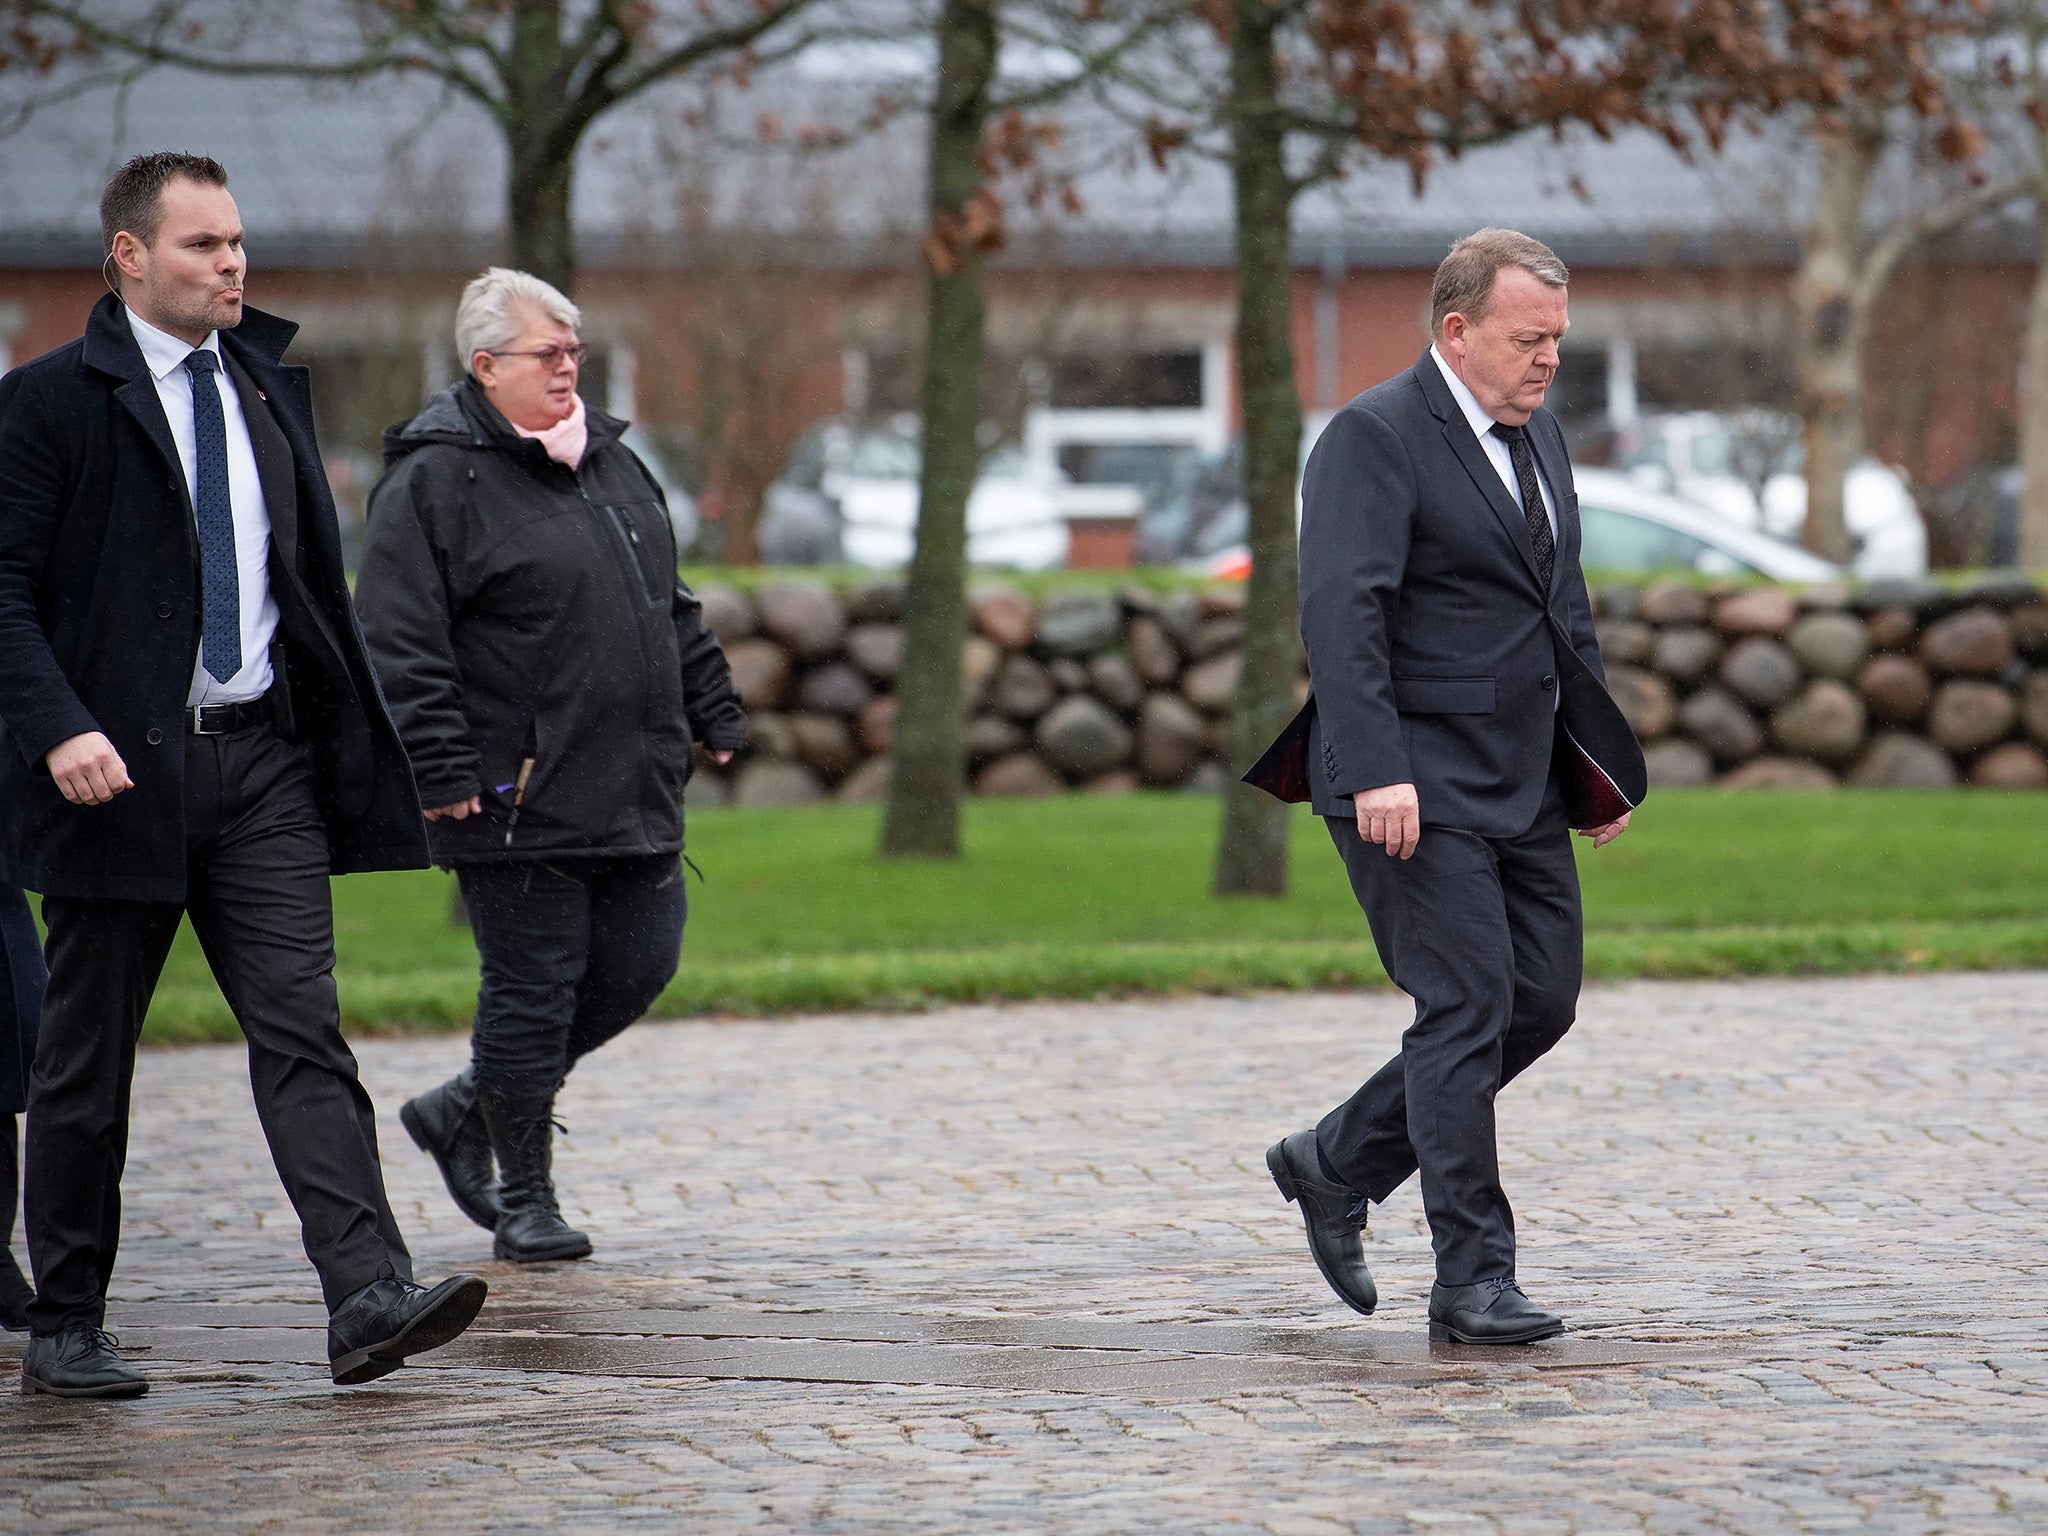 Danish Prime Minister Lars Lokke Rasmussen, right, attends the funeral of Danish student Louisa Vesterager Jespersen in Ikast, Denmark